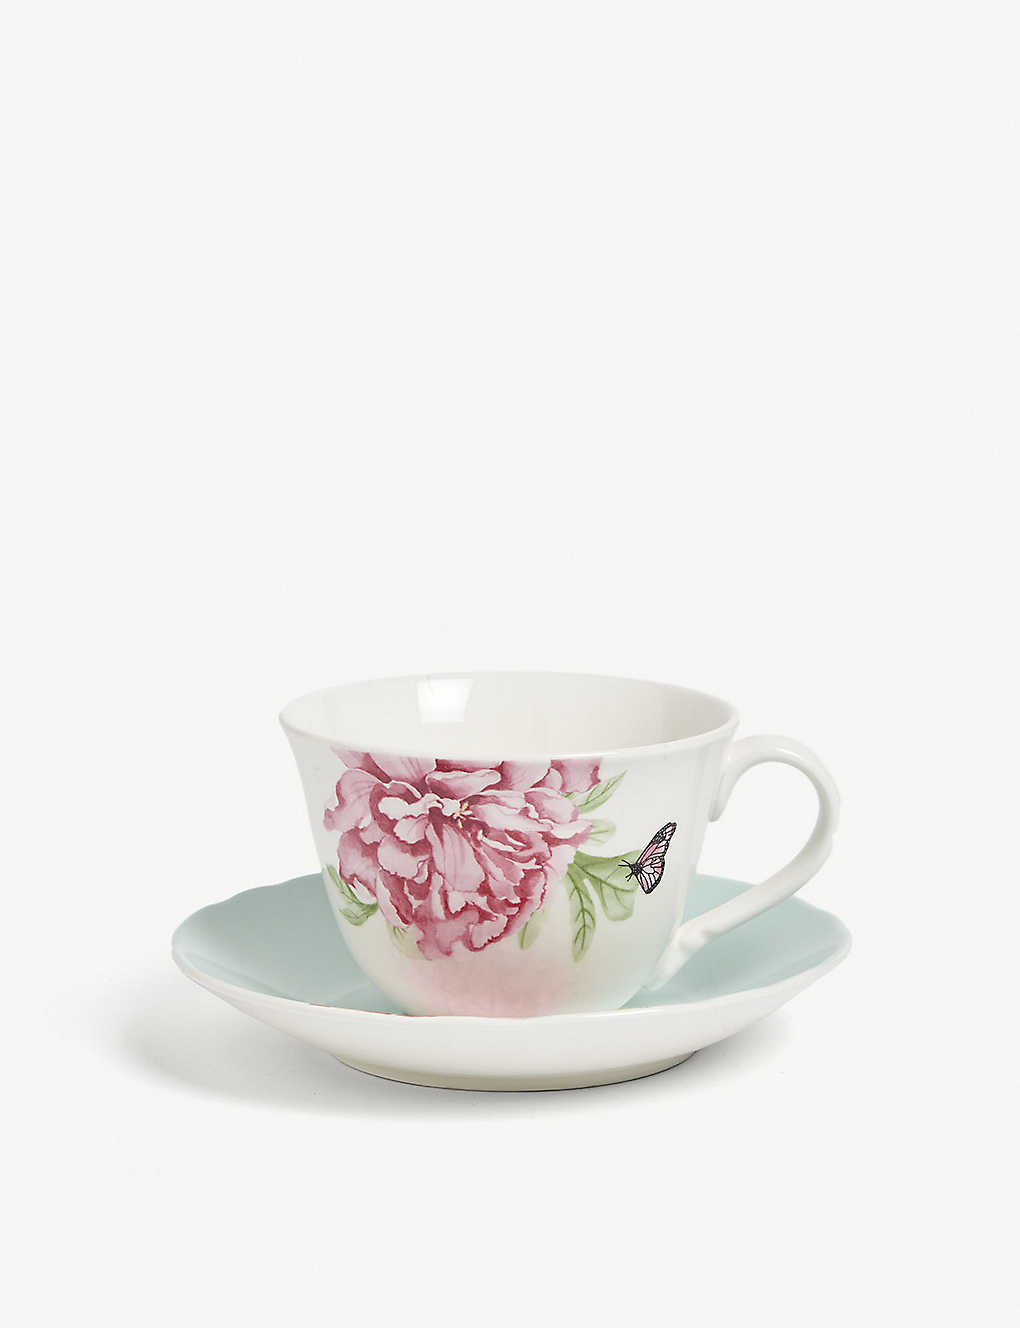 Royal Albert Miranda Kerr Porcelain Teacup And Saucer